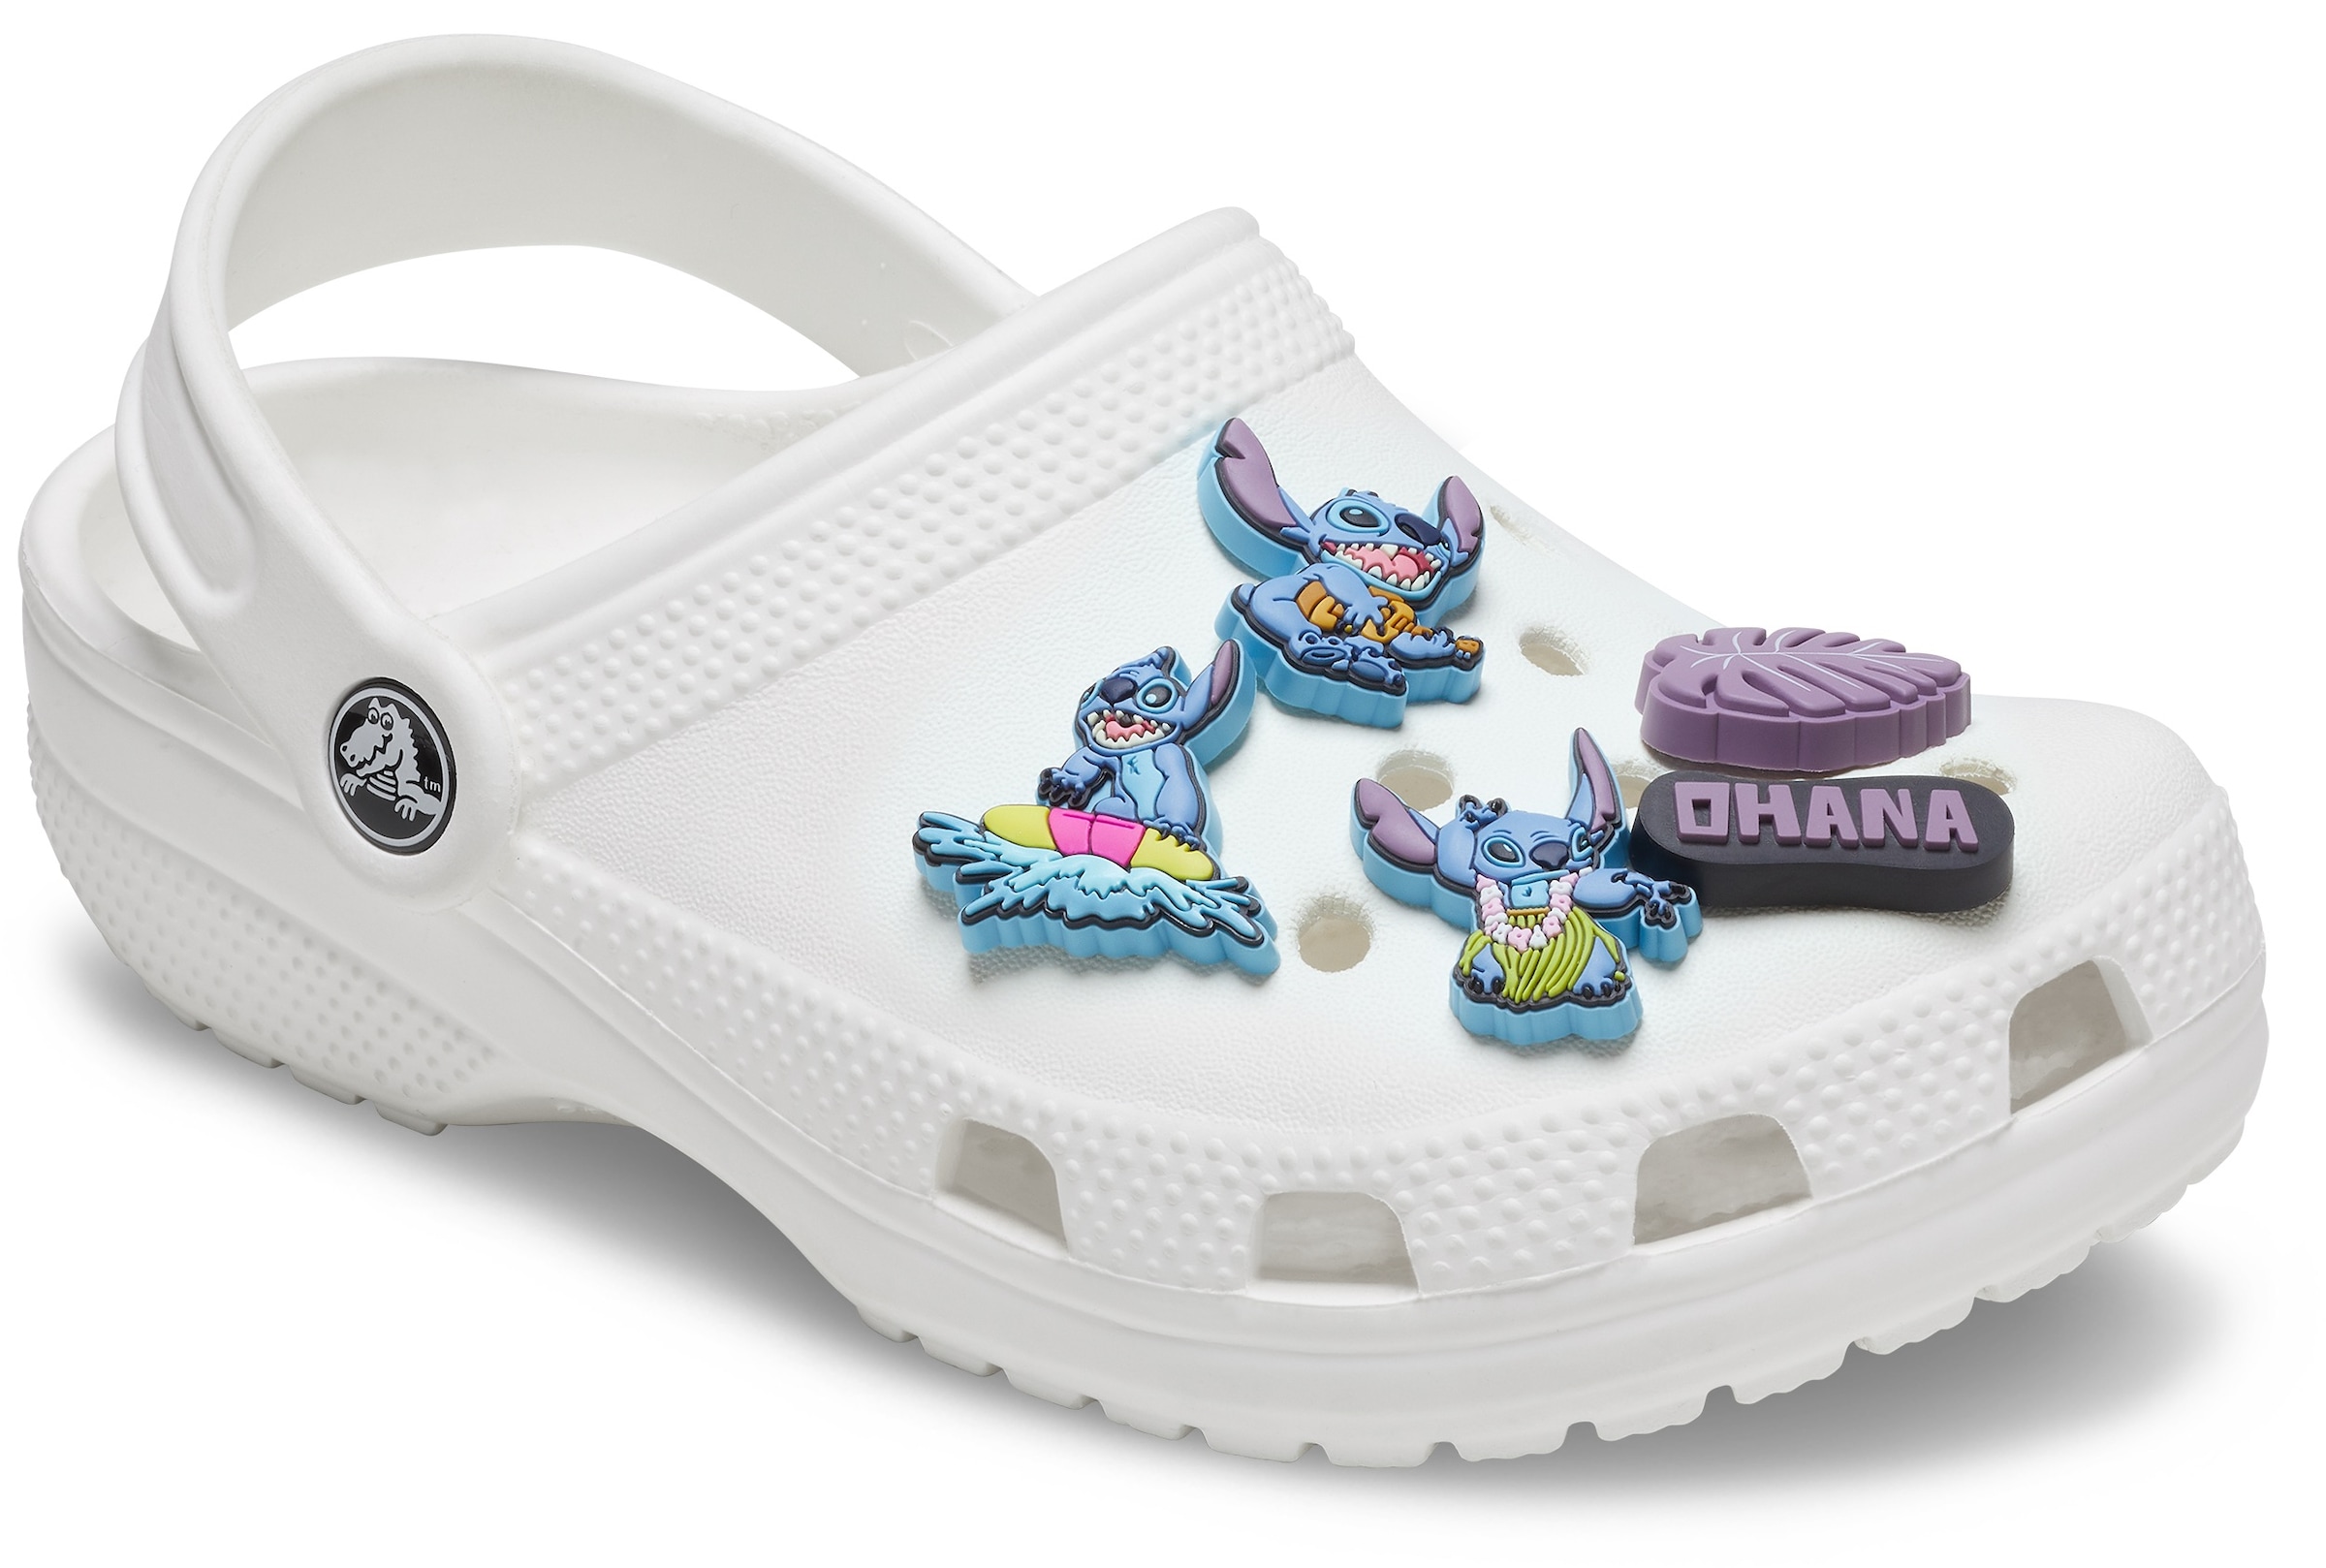 Crocs Schuhanstecker »Jibbitz™ Stitch Tropical«, (Set, 5 tlg., Kein Spielzeug. Nicht für Kinder unter 3 Jahren geeignet), Charm, Anstecker, Schuh-Anstecker mit Sommer Motiven